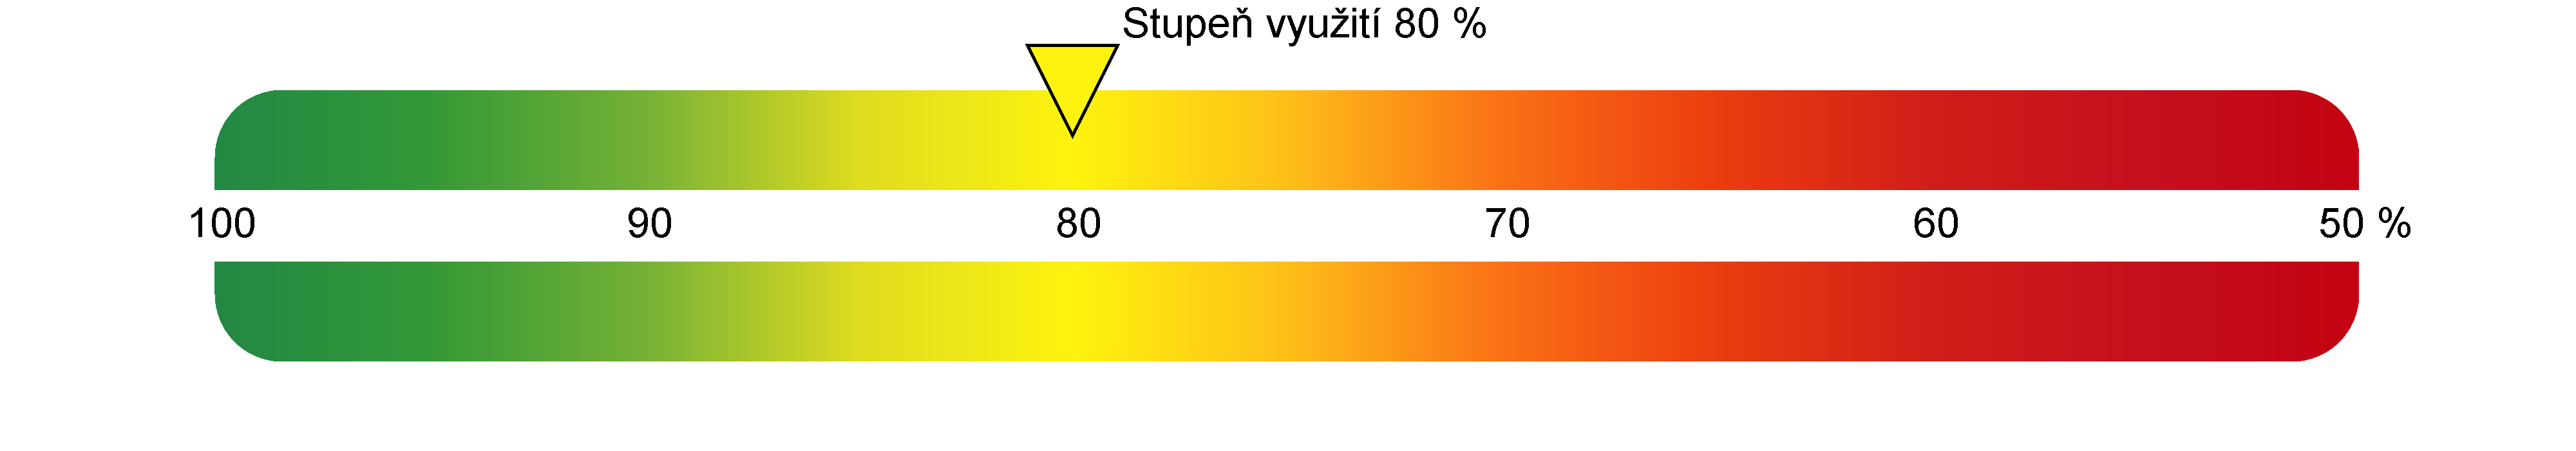 4 Vyhodnocení energetické účinnosti výroby tepla během měření Účinnosti výroby tepla 80 % při průměrné venkovní teplotě -11 C Účinnosti výroby tepla v kotli je poměrem vyrobeného tepla (užitná